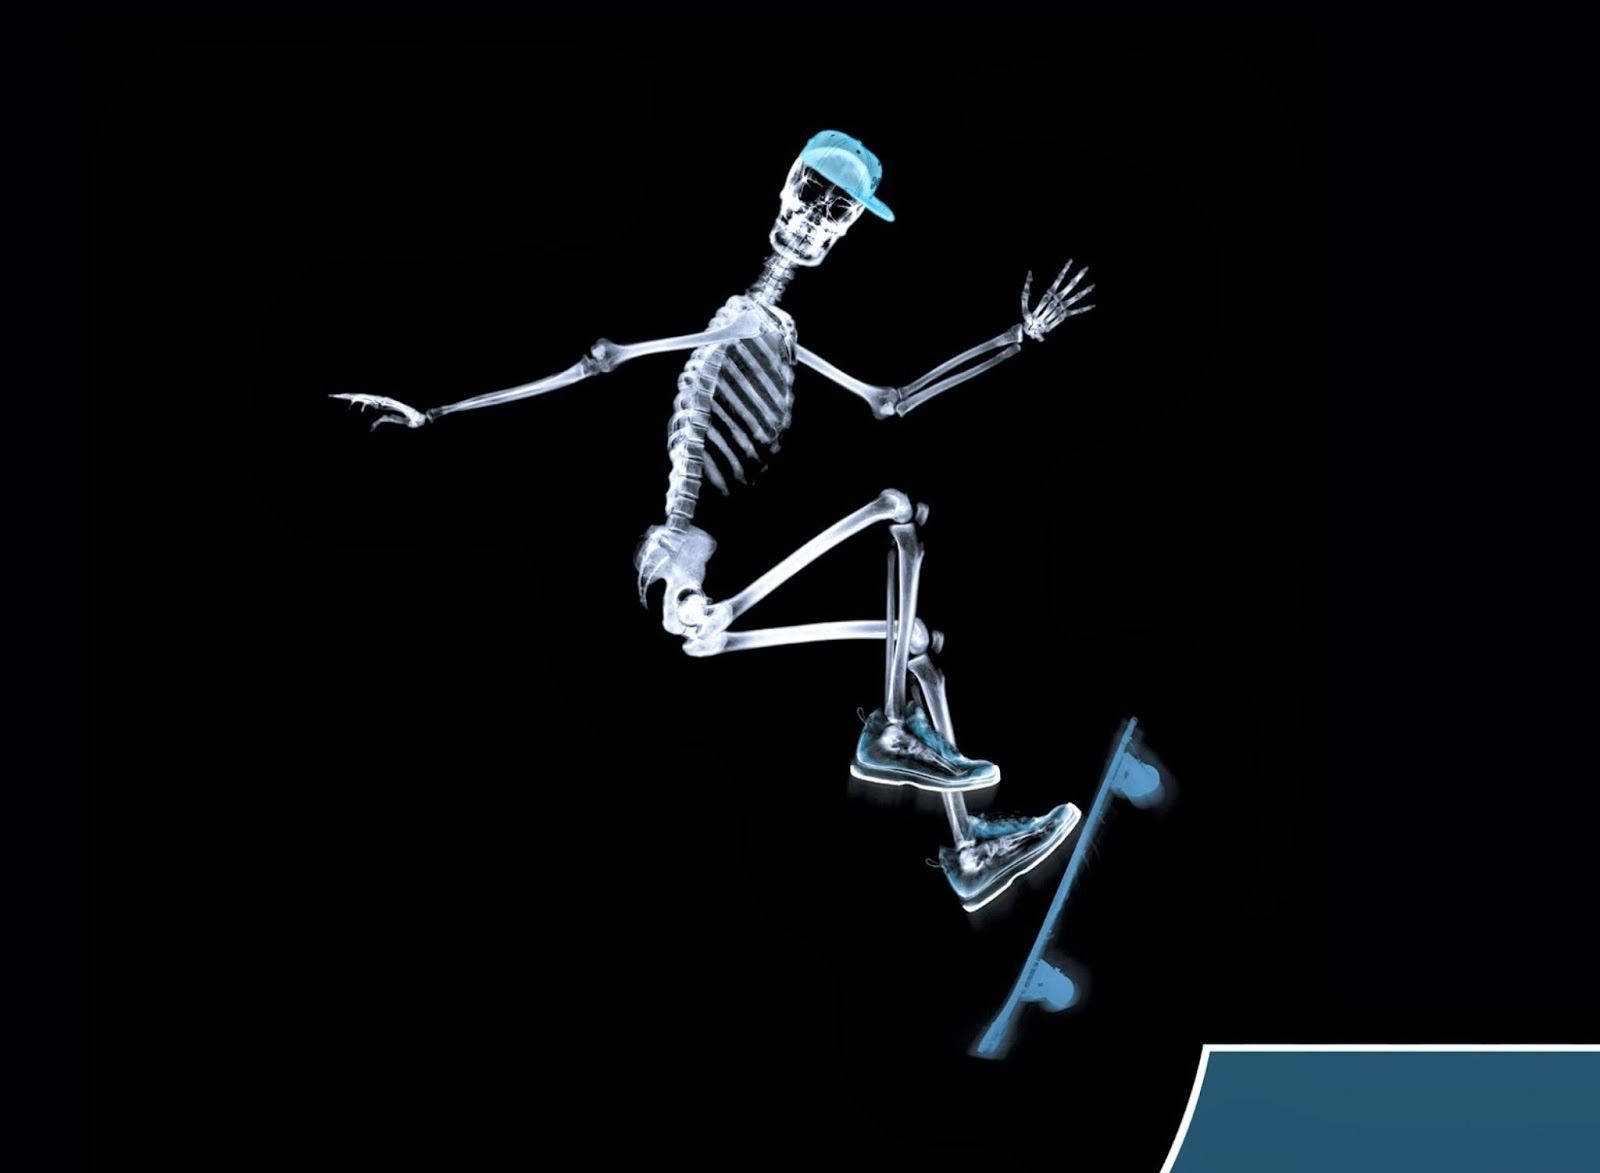 Skeleton Riding Skateboard Wallpaper